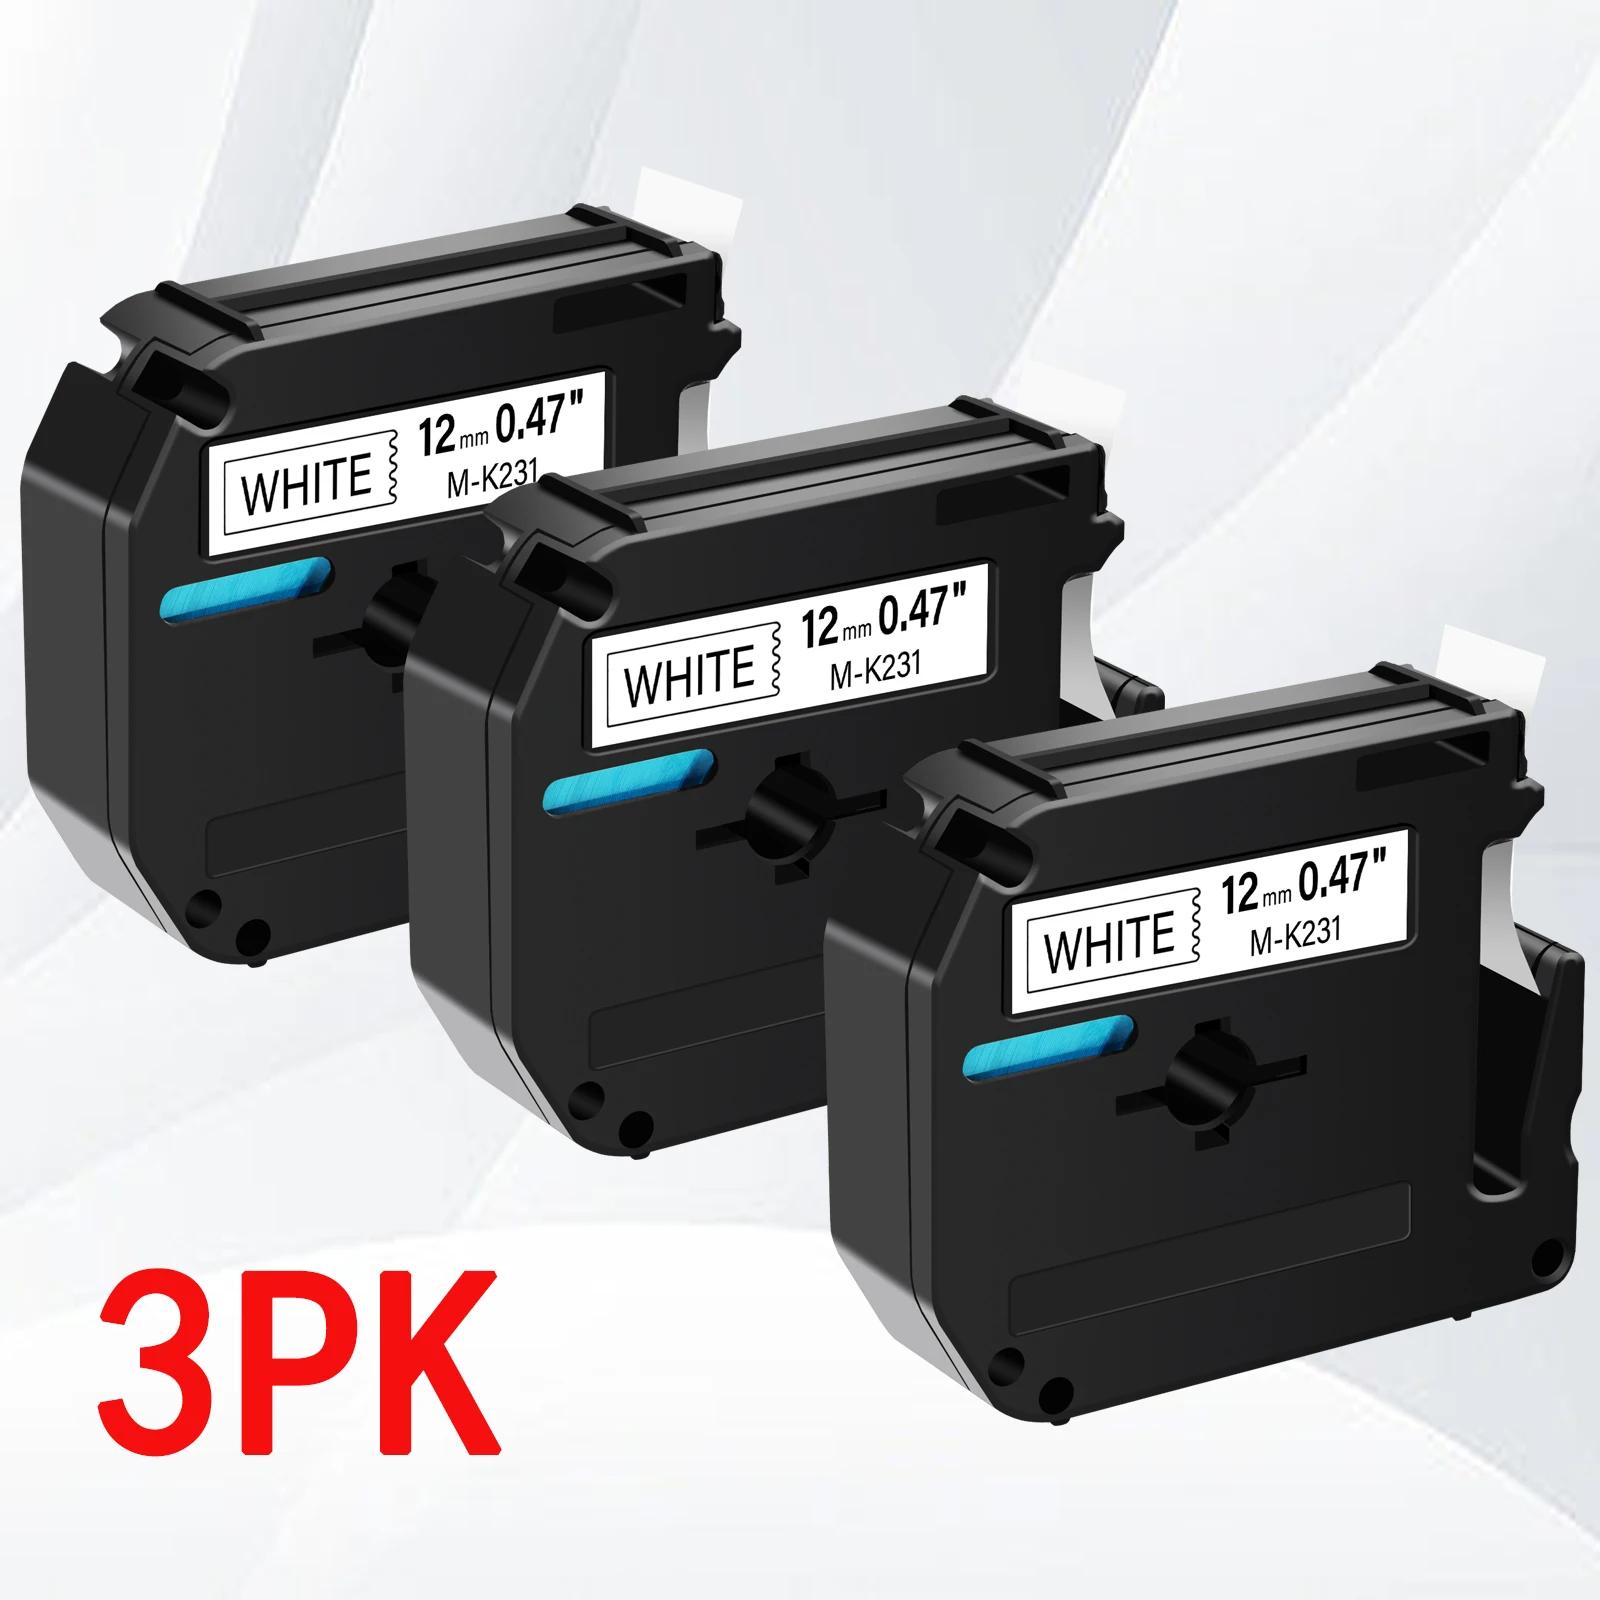  MK  MK221 MK 631,  P ġ PT-M95 PT-65 PT-70 PT-80 Ϳ, 3PK MK-231 M-K 131,   ȭƮ 9mm, 12mm